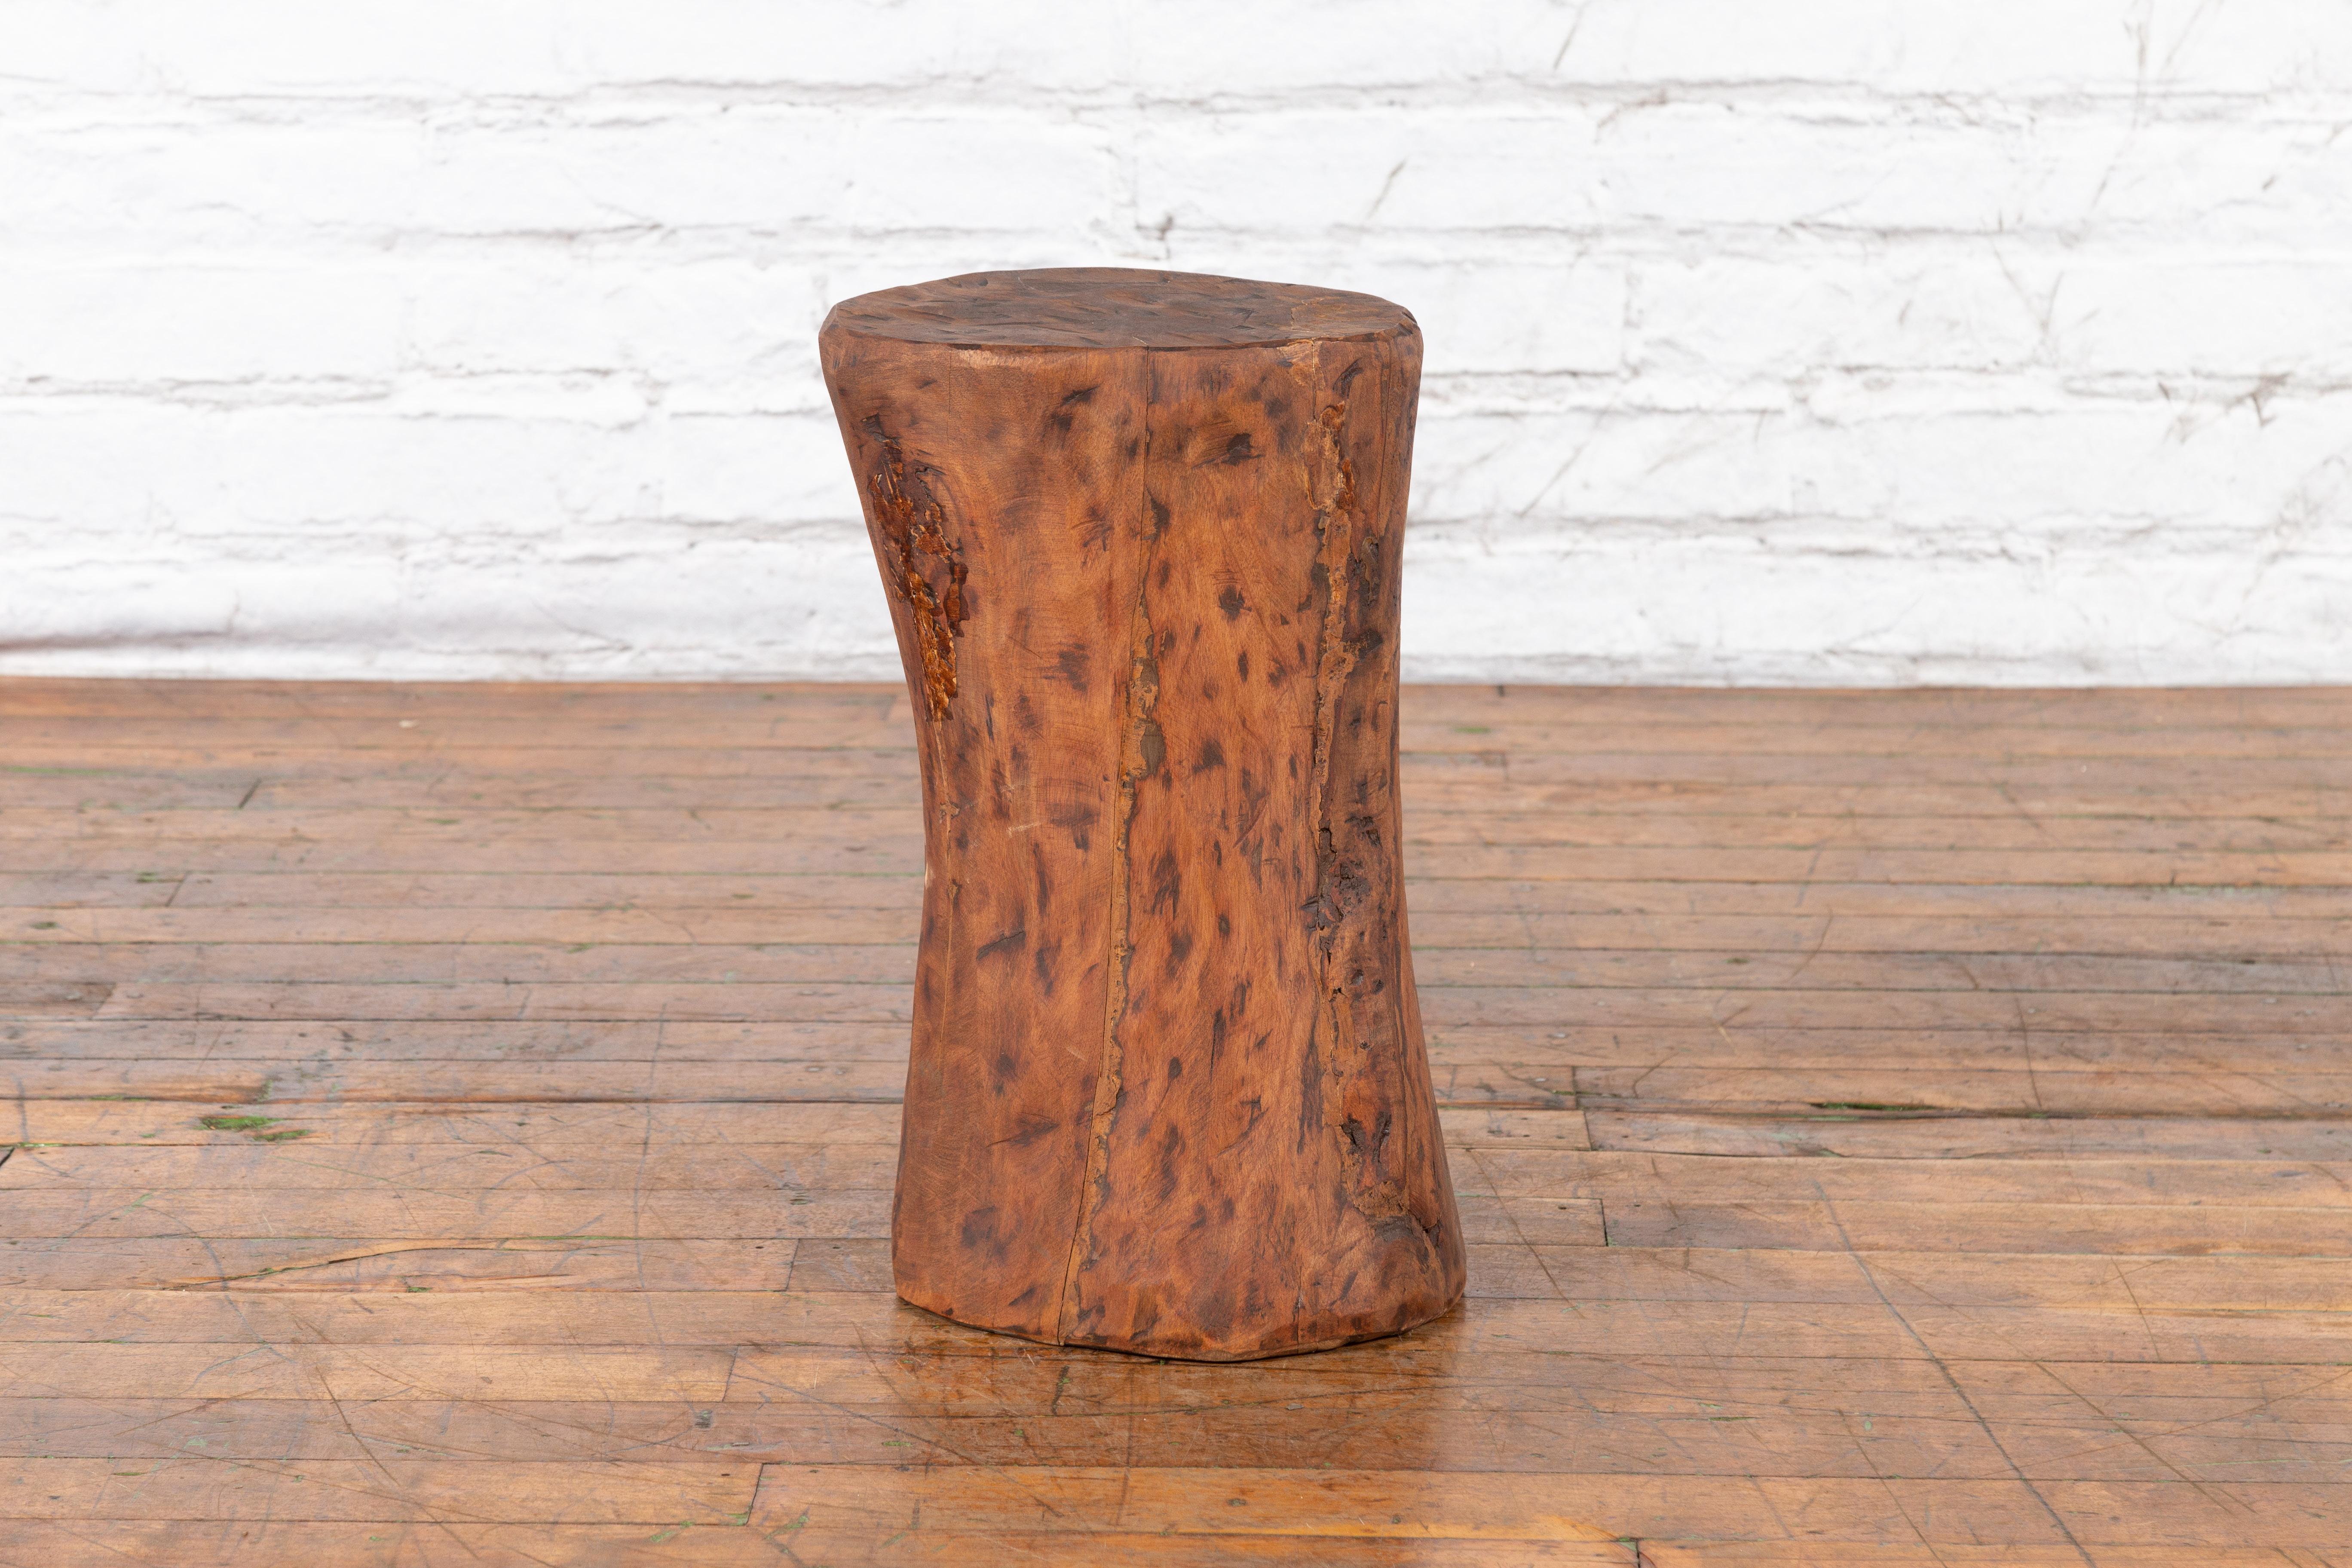 Un piédestal rustique chinois en bois de souche d'arbre du milieu du 20e siècle avec une patine d'usure. Créé en Chine à l'époque du Midcentury, ce piédestal en bois nous charme par son bel aspect rustique et son corps à la texture brune. Plat dans